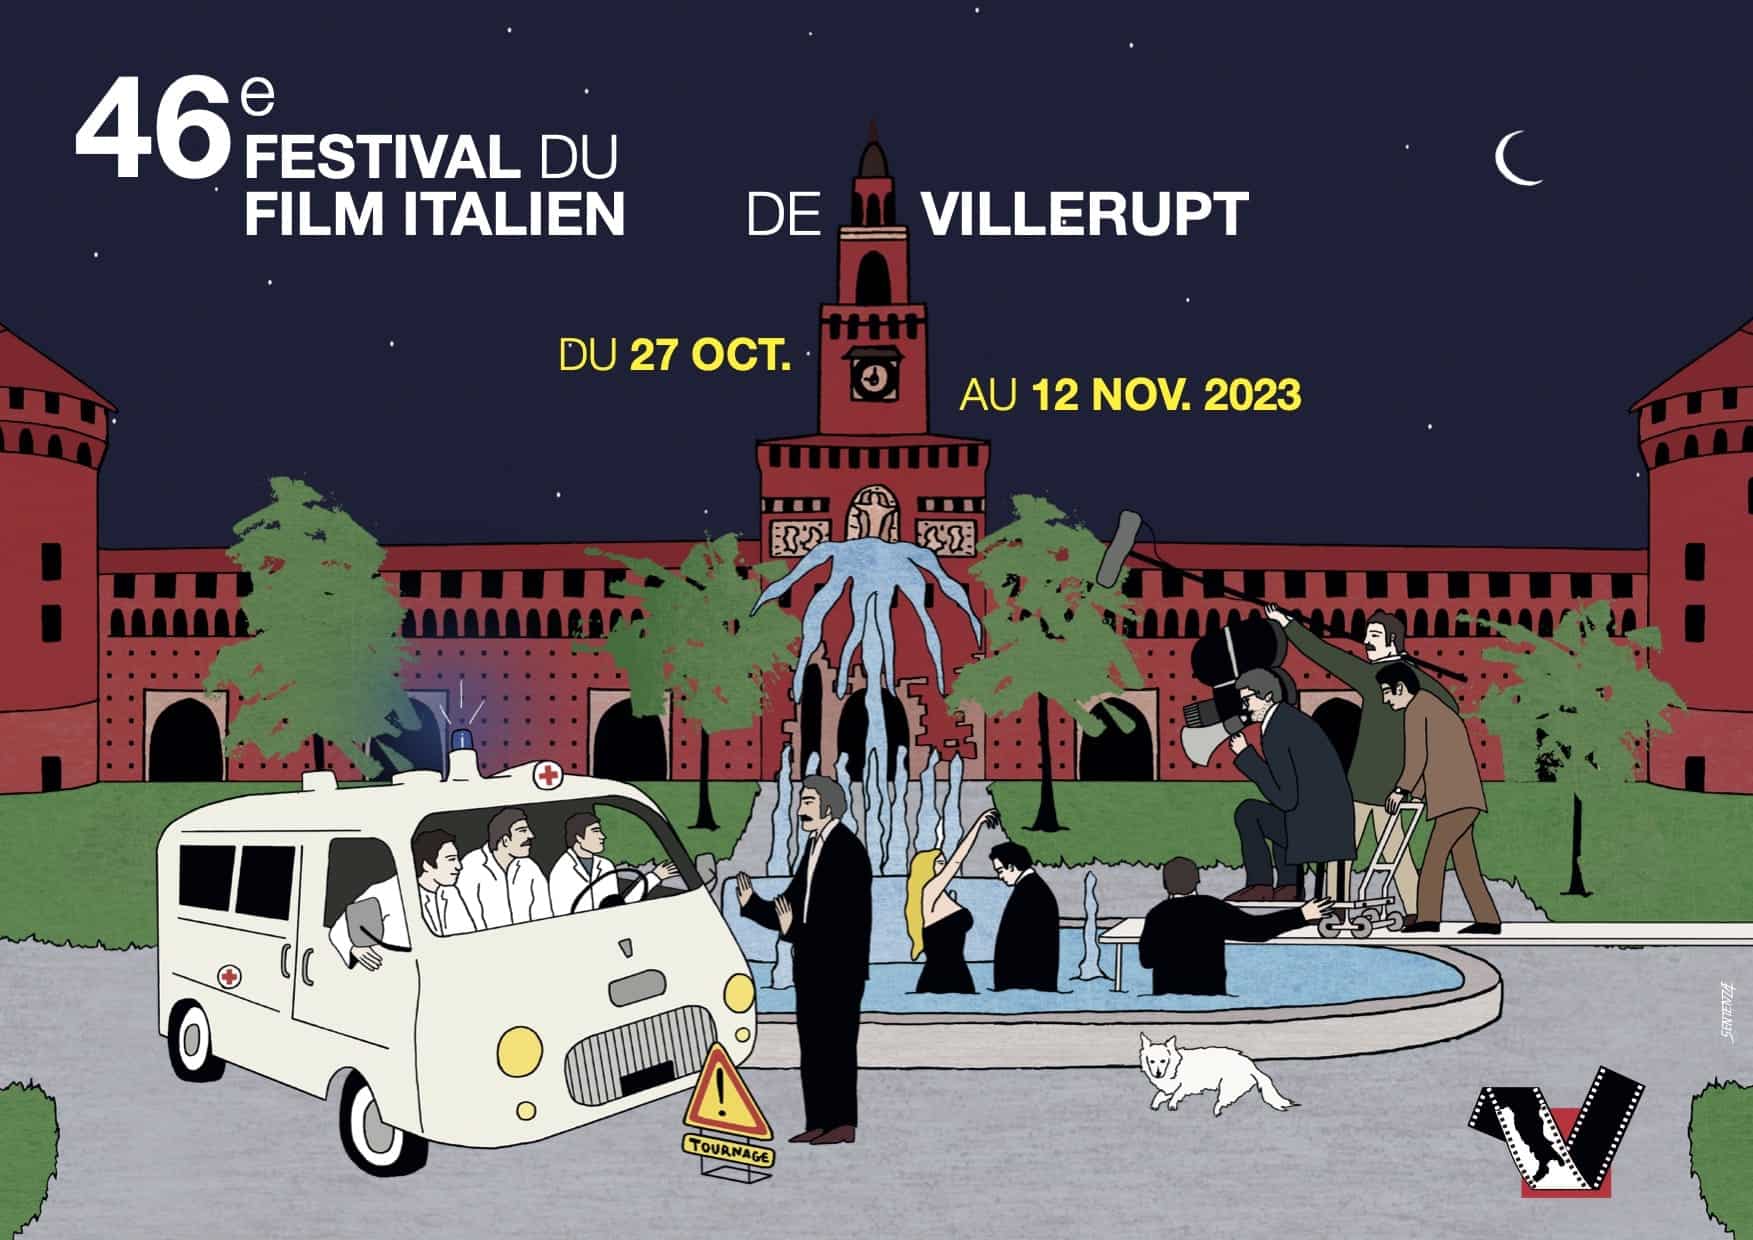 Festival du Film Italien de Villerupt 2023 affiche cinéma